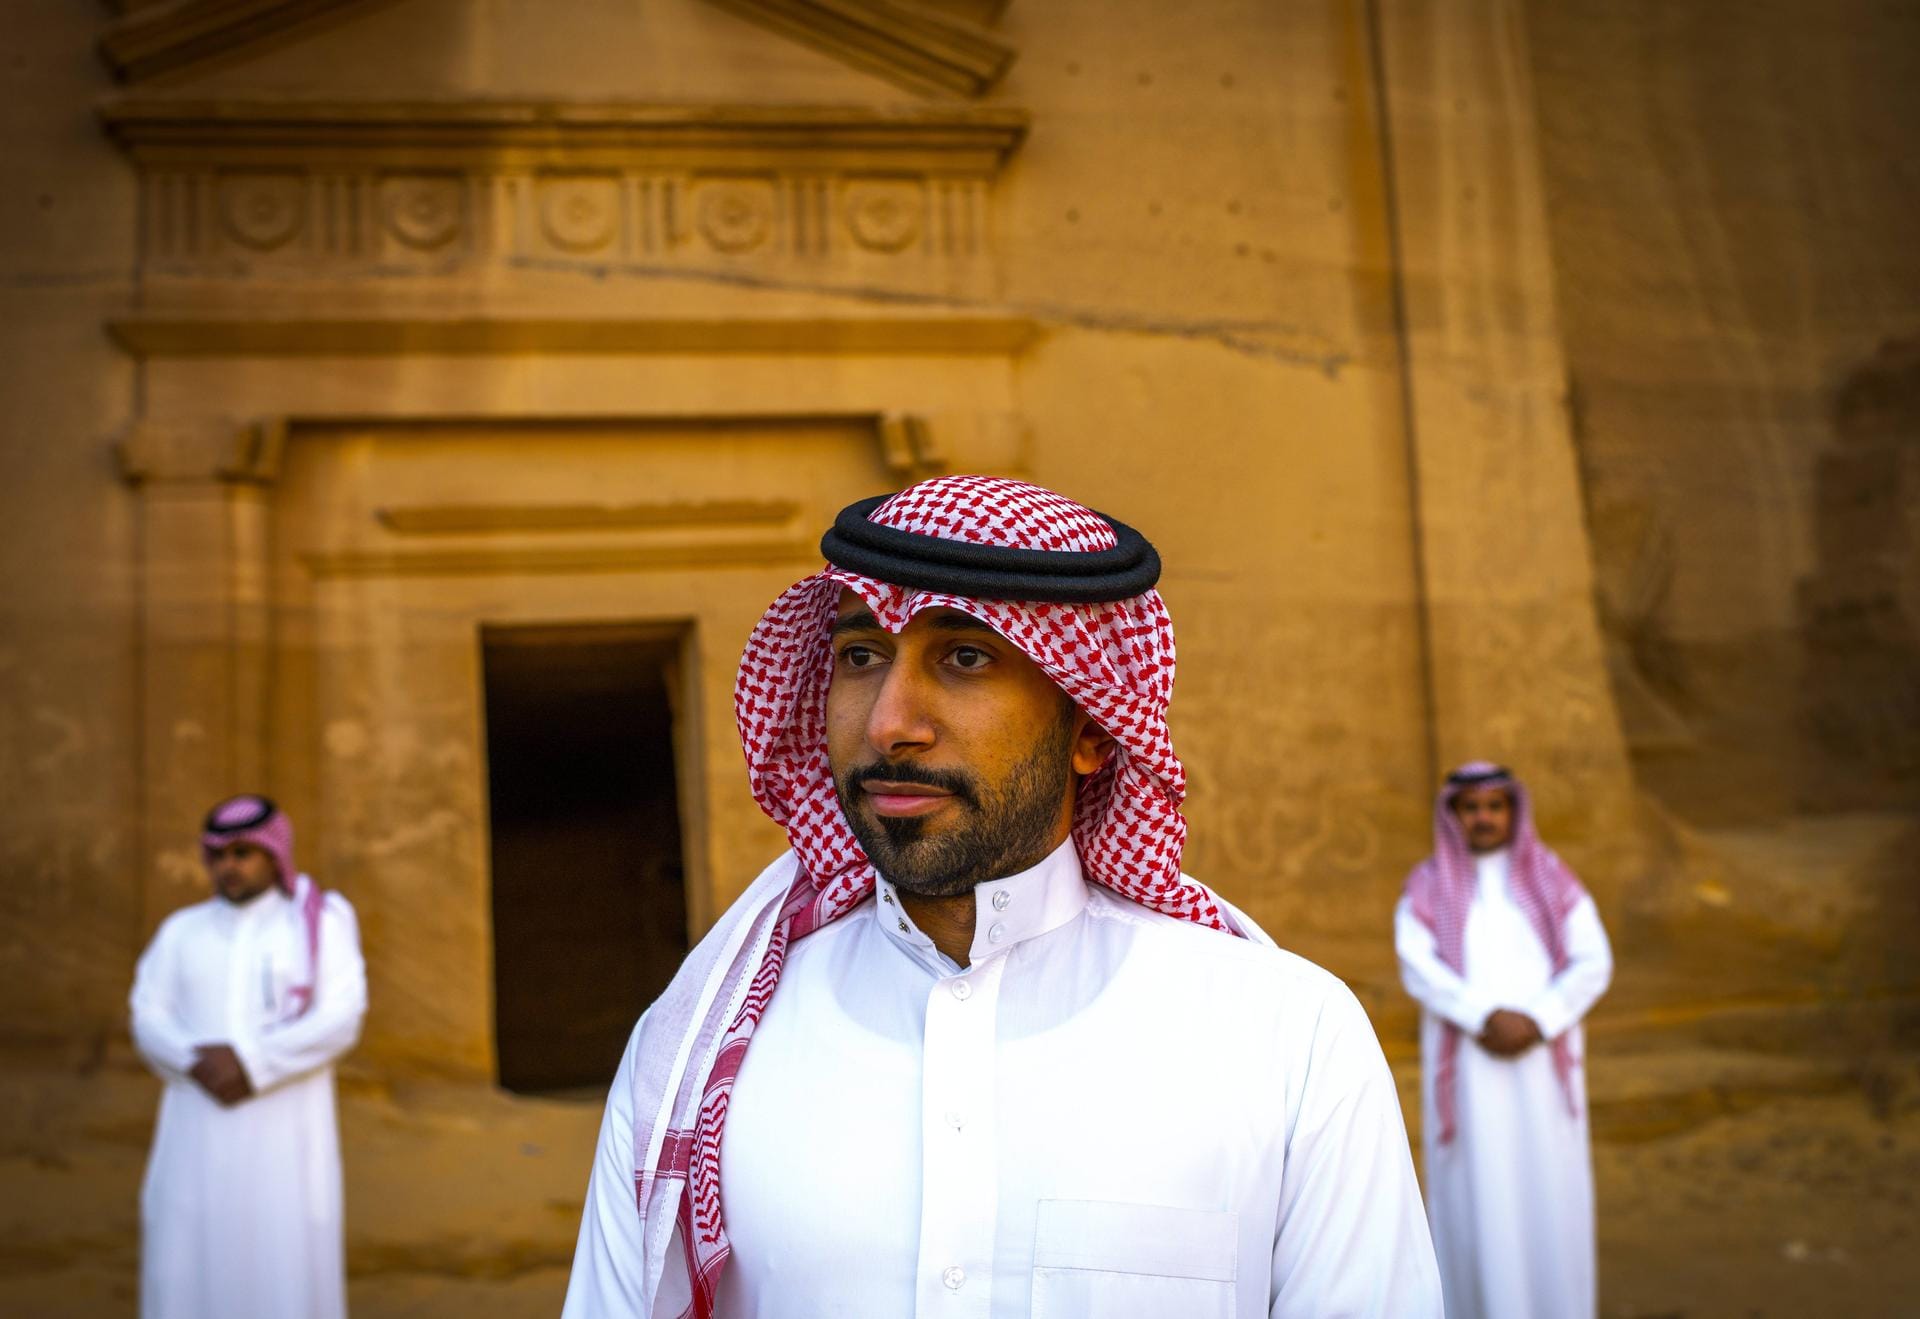 Traditionelle Kleidung in Saudi-Arabien: Das lange, meist weiße baumwollene Gewand der Männer heißt Qamis. Die Kopfbedeckung Kufiya schützt vor Sonne und Hitze.